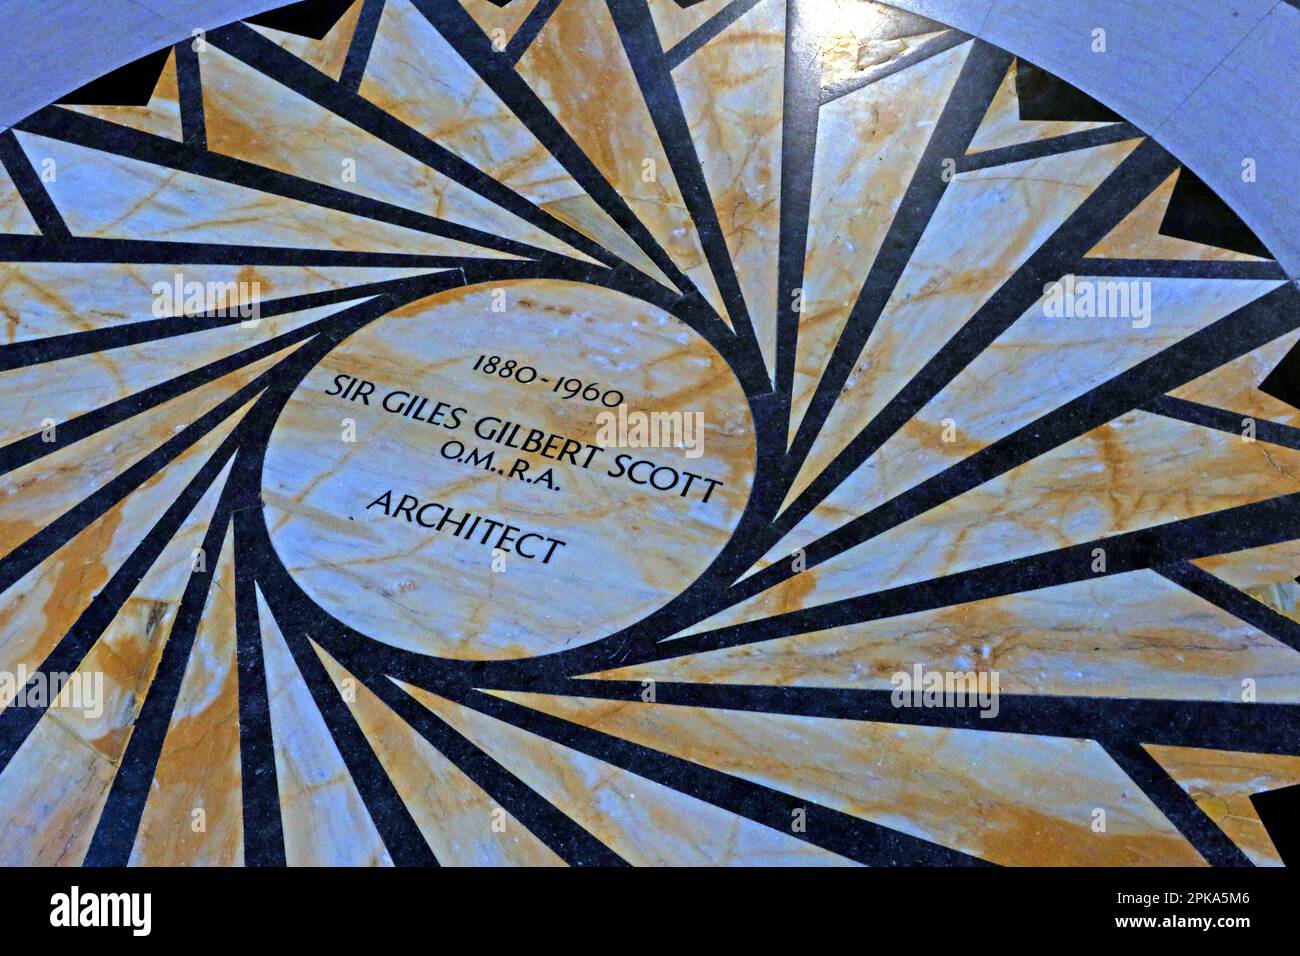 Sir Giles Gilbert Scott OM RA FRIBA, 1880-1960, architecte britannique, mosaïque circulaire au sol de la cathédrale anglicane de Liverpool, Merseyside, Royaume-Uni, L1 7AZ Banque D'Images